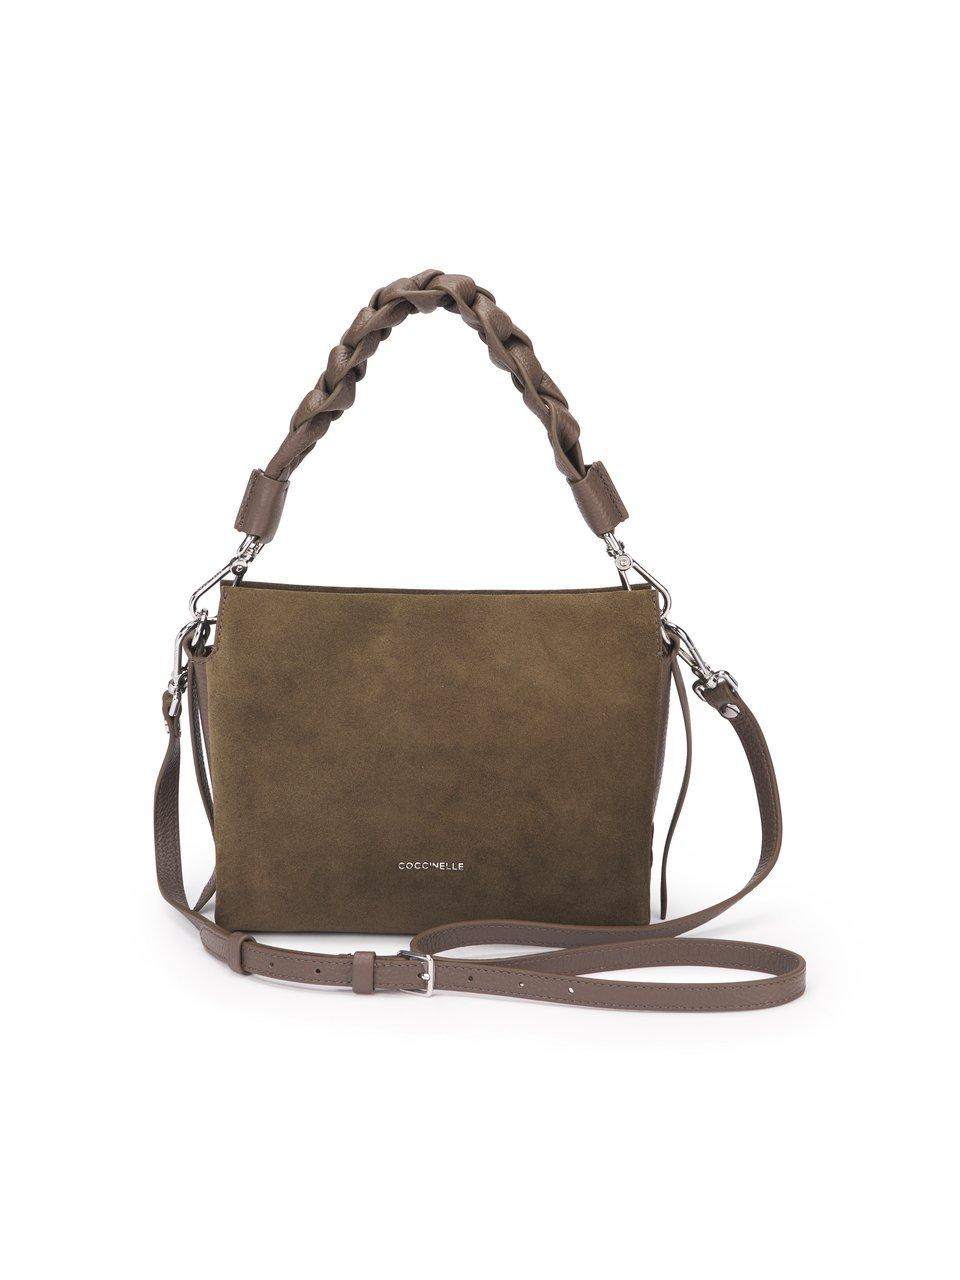 Image of Handbag “Boheme Suede“ Coccinelle brown